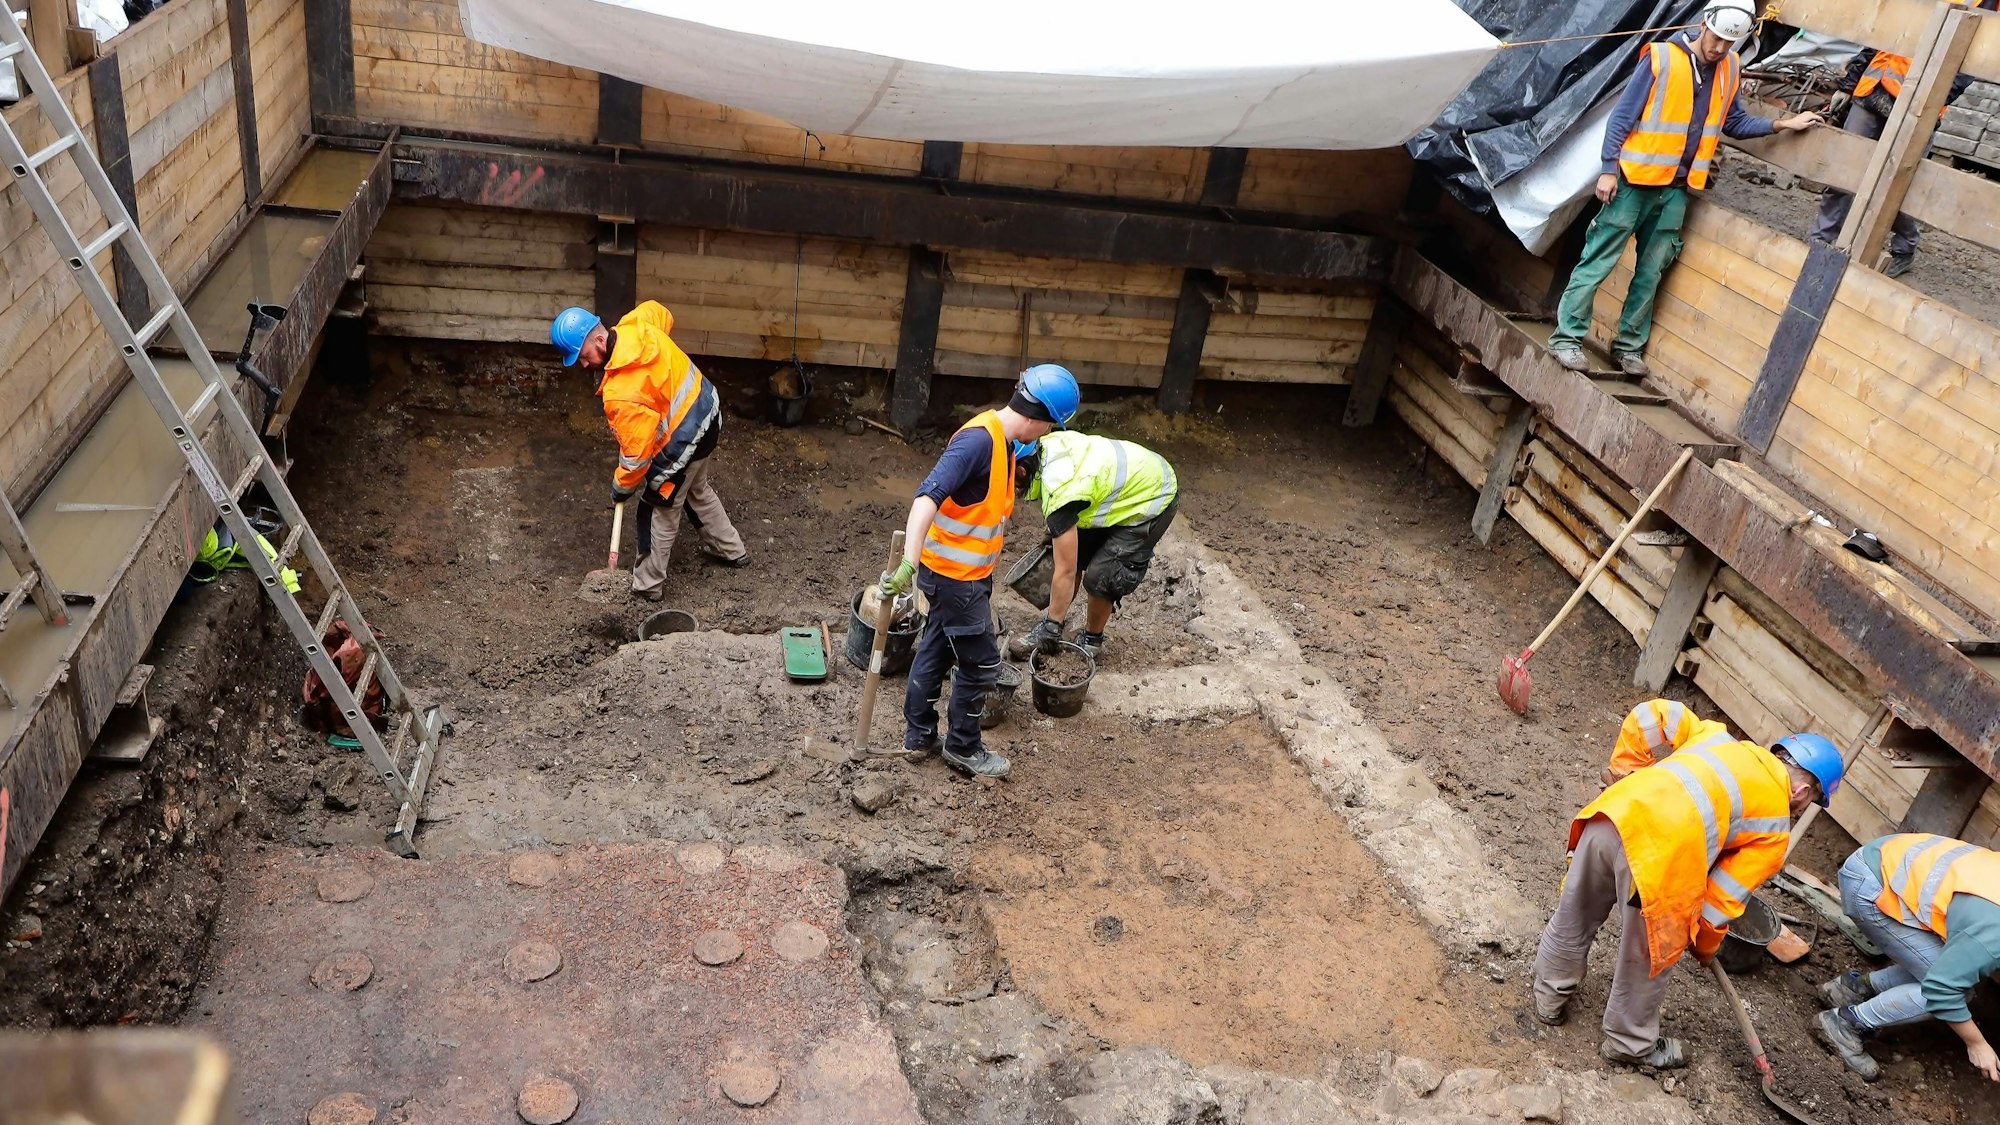 Zu sehen sind mehrere Bauarbeiter in orangefarbenen Warnwesten, die mit der Ausgrabung einer römischen Badeanlage am Kölner Neumarkt beschäftigt sind.